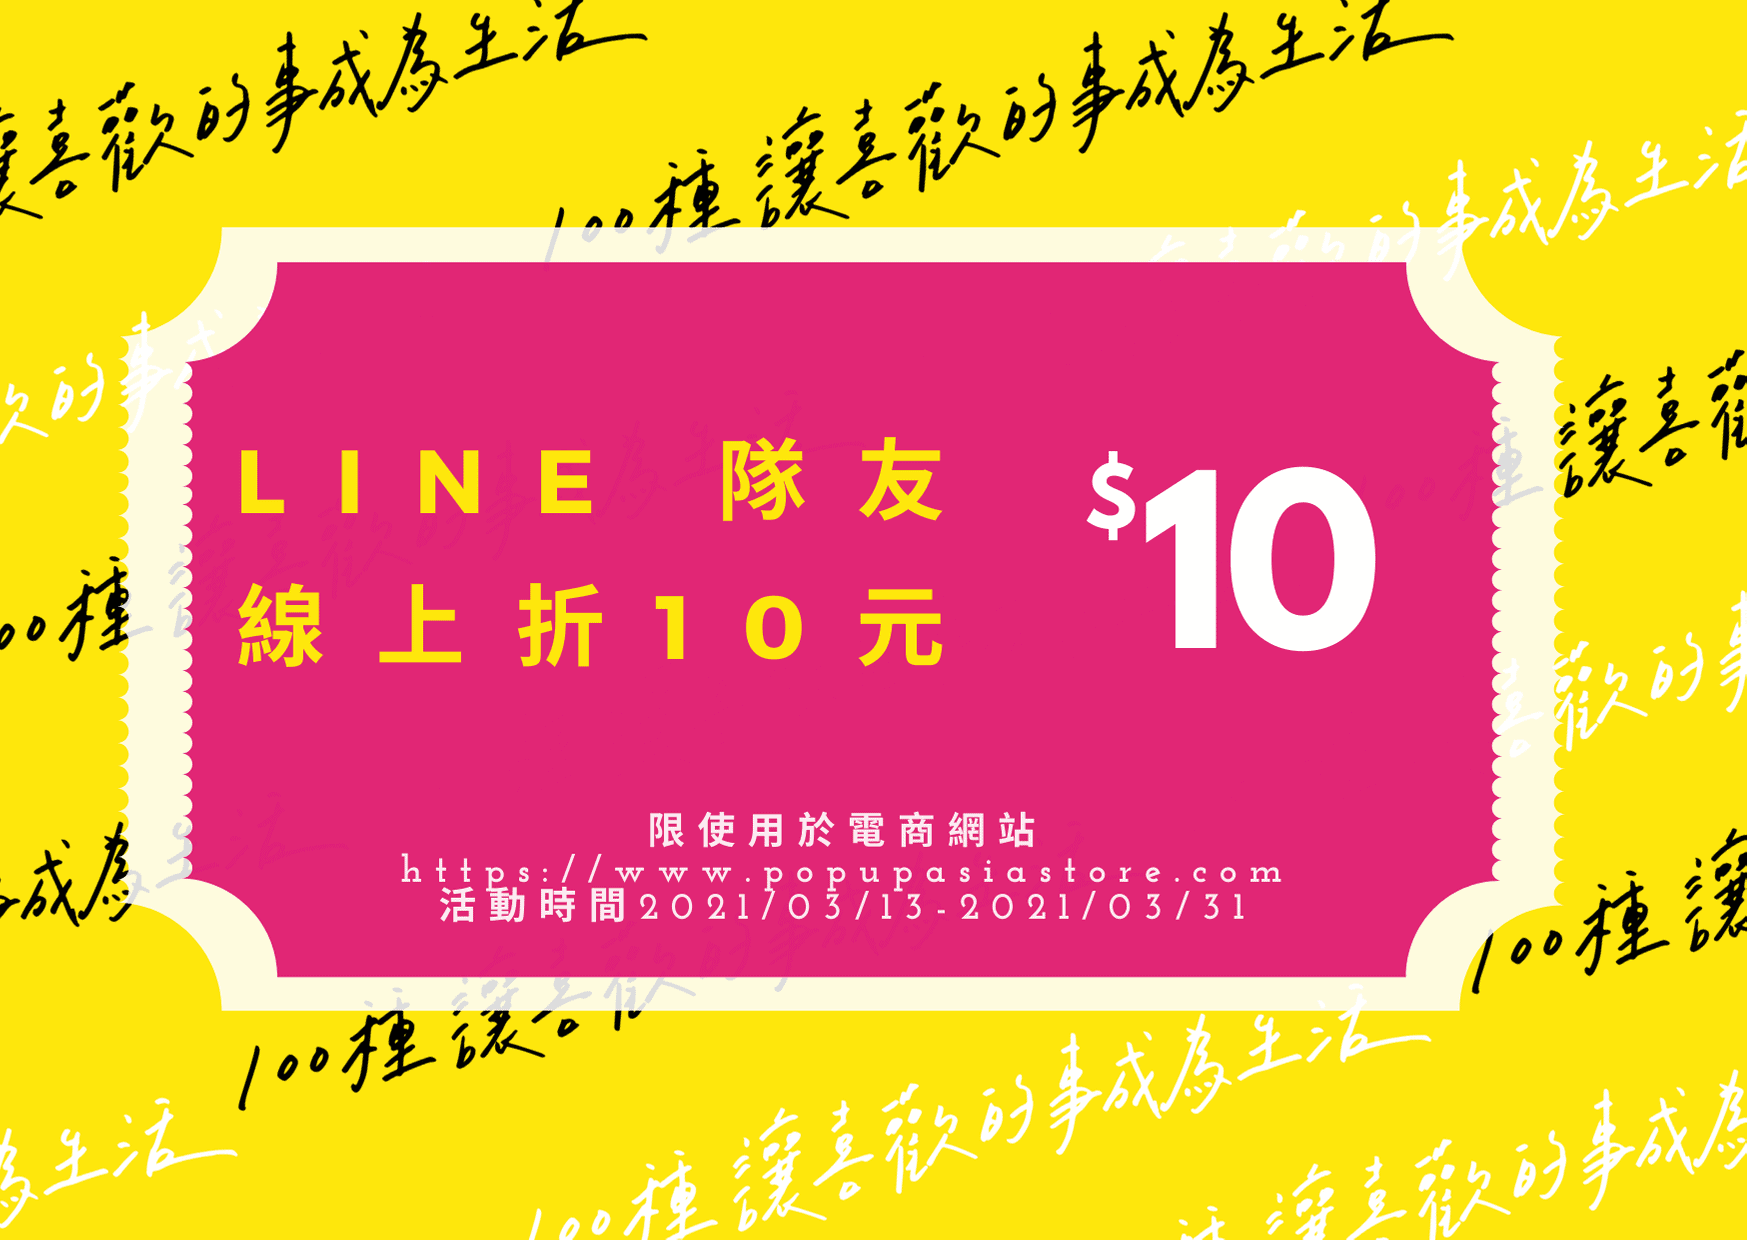 LINE隊友-線上折10元
2021POP會員三月份活動
官方購物網站開通會員就趁現在